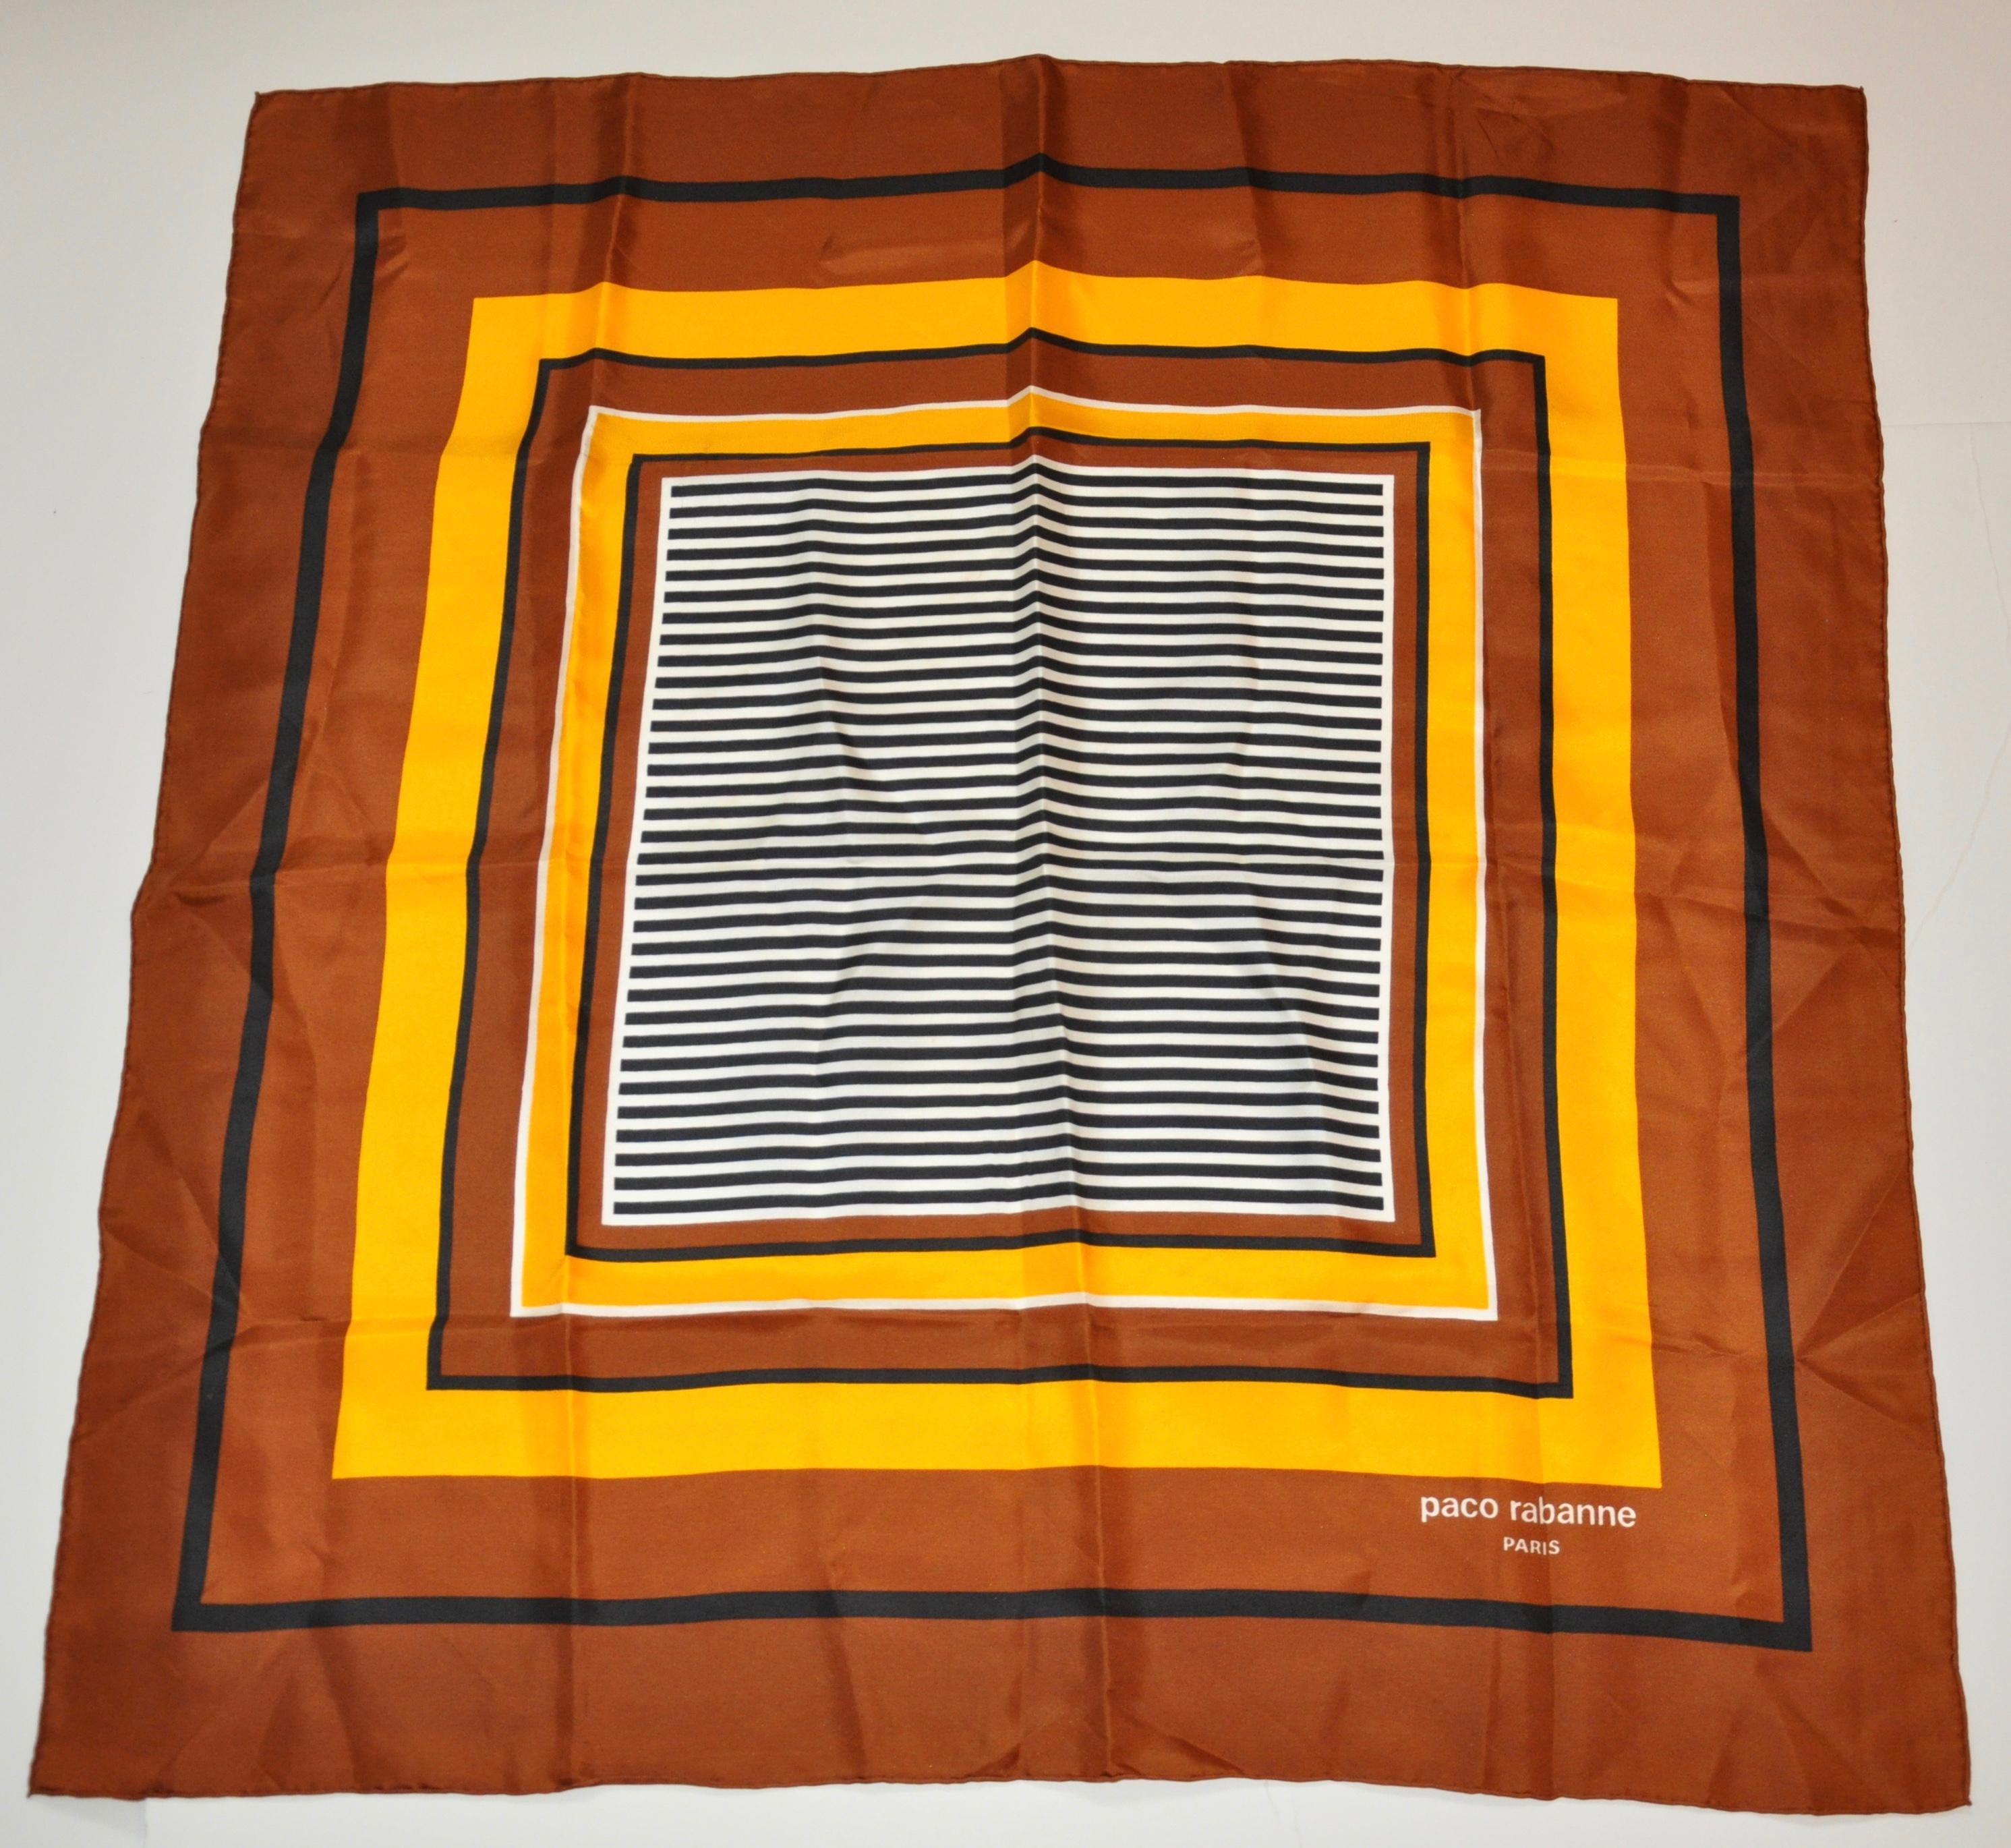      L'écharpe en soie de Paco Rabanne présente de riches nuances de brun et de jaune accentuées de noir autour d'un centre rayé. Elle mesure 30 pouces par 31 pouces. Les bords sont roulés à la main et fabriqués en France.